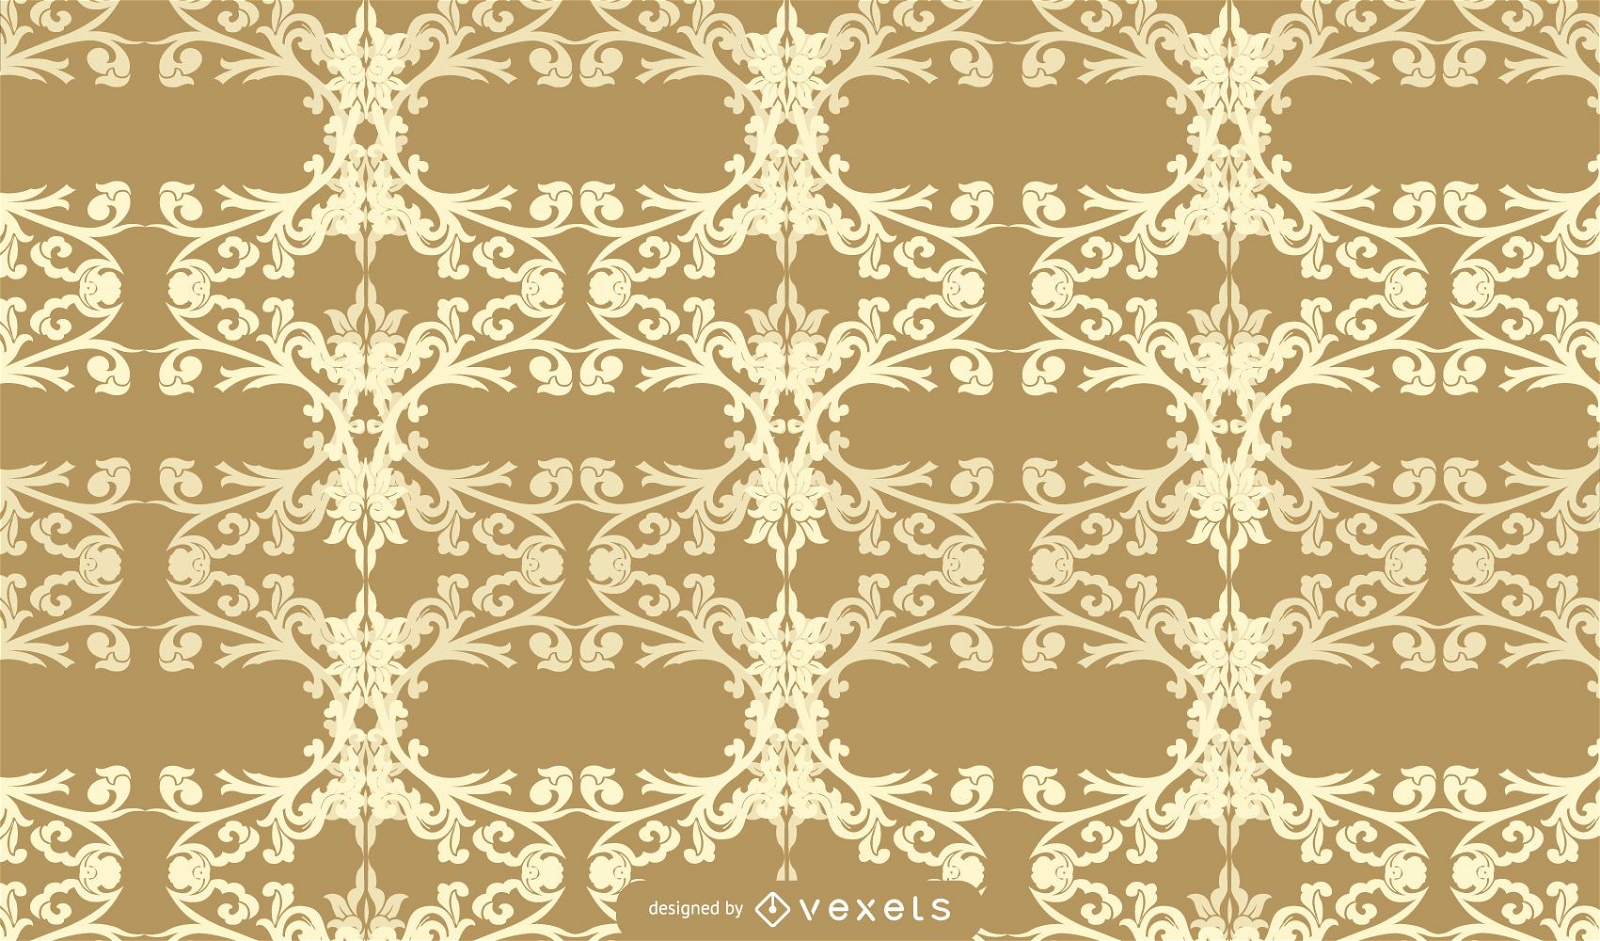 Viktorianisches Muster-Hintergrunddesign